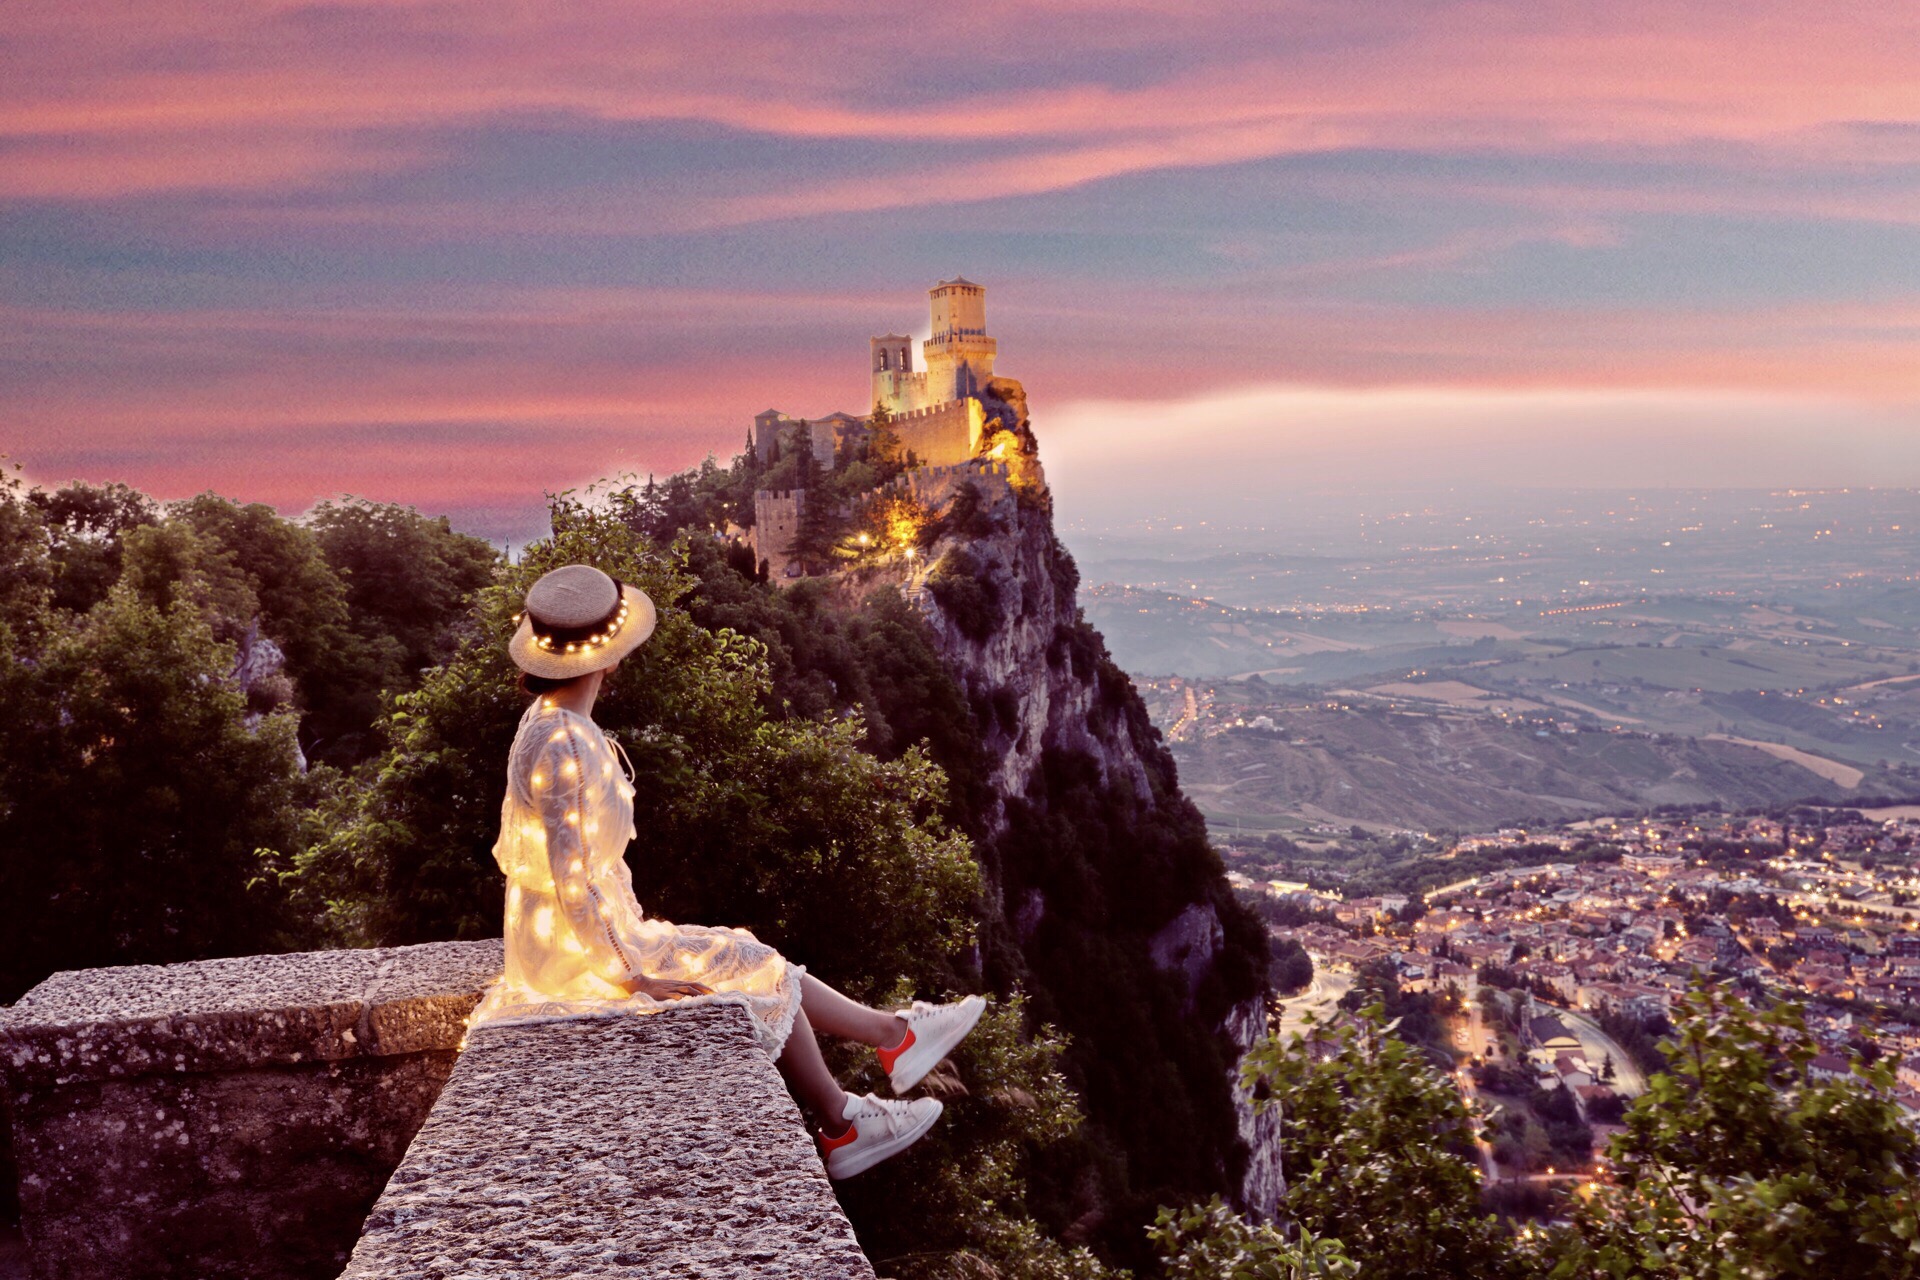 圣马力诺－山崖上的袖珍共和国。决定去圣马力诺后便搜索游玩的风景点。一张坐在悬崖边上，仰望城堡的照片吸